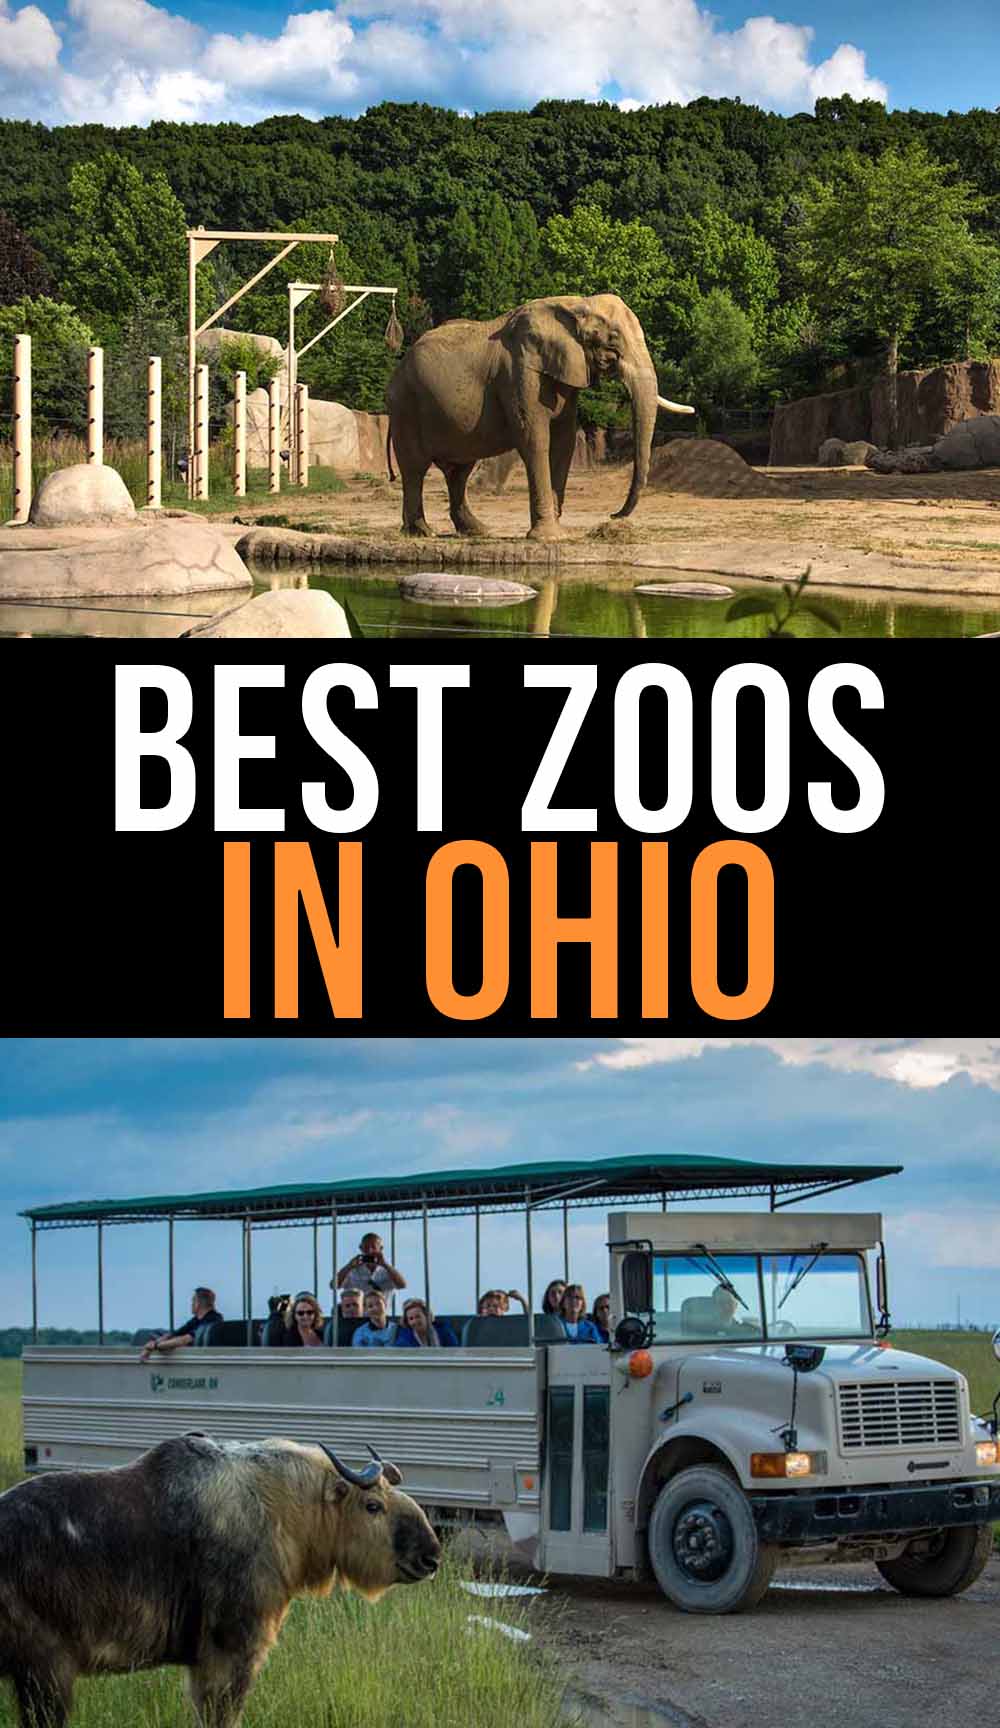 The Best Zoos in Ohio